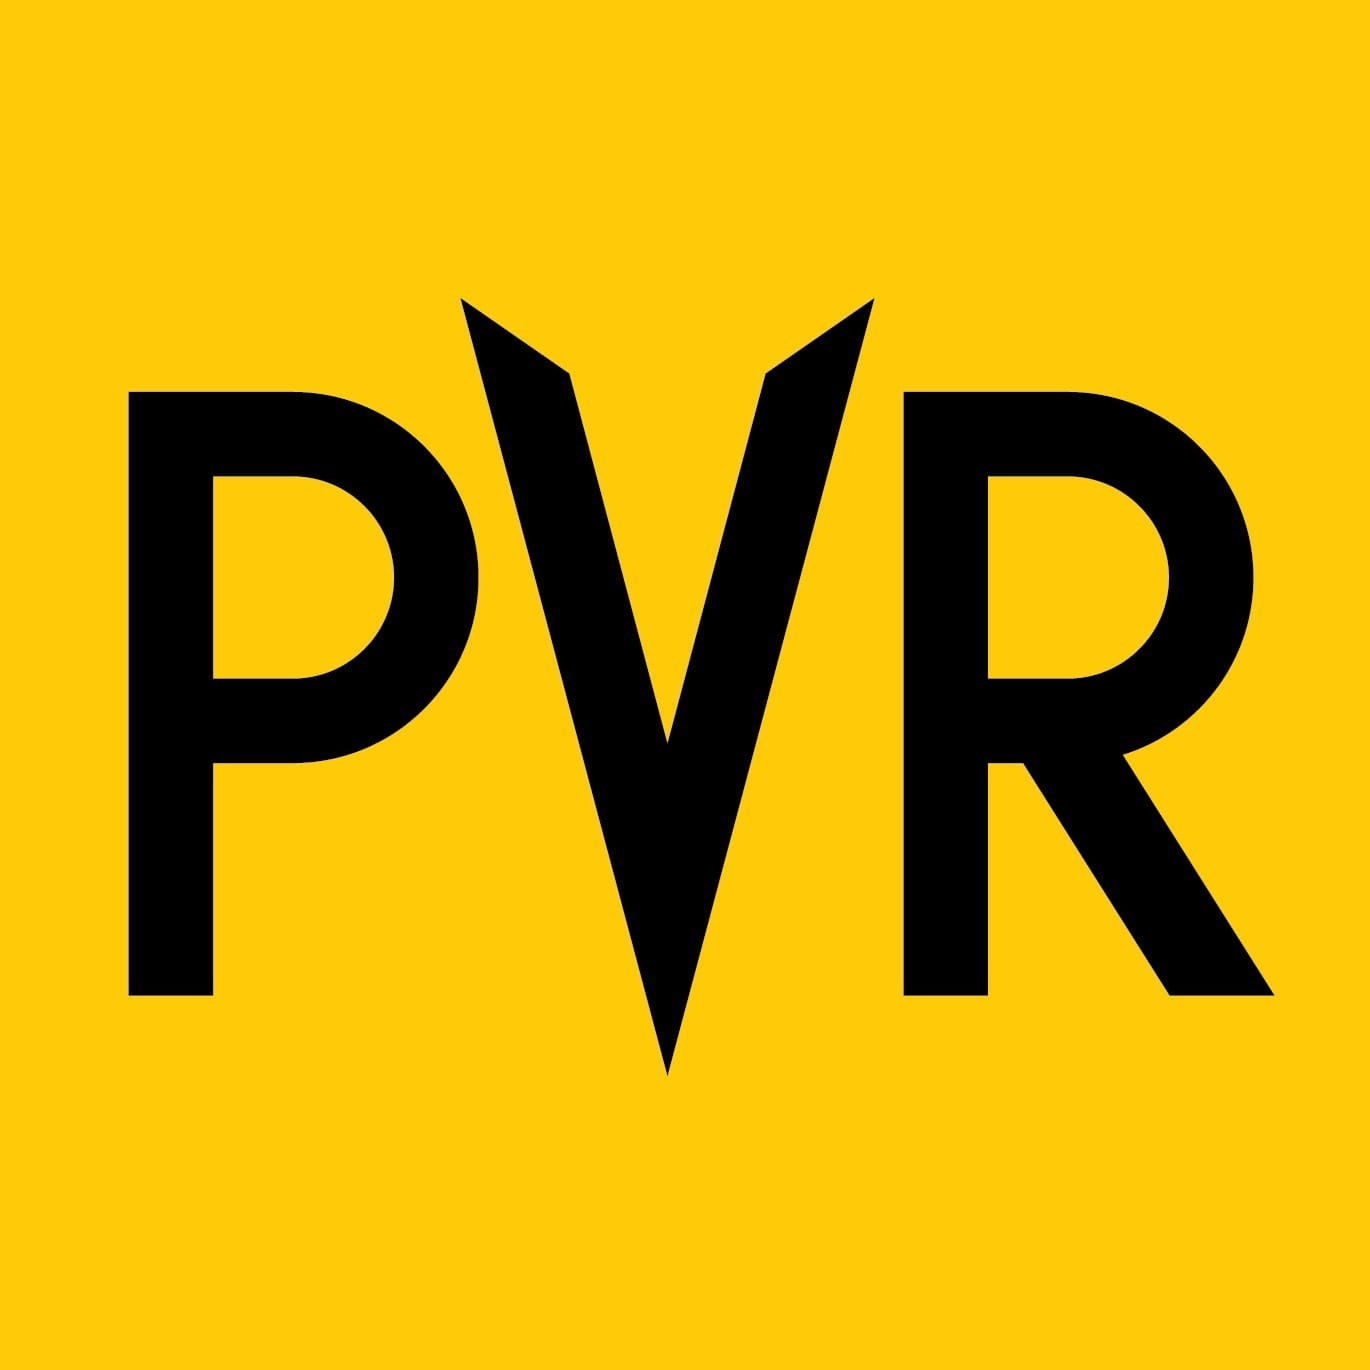 PVR Directors Cut|Adventure Park|Entertainment